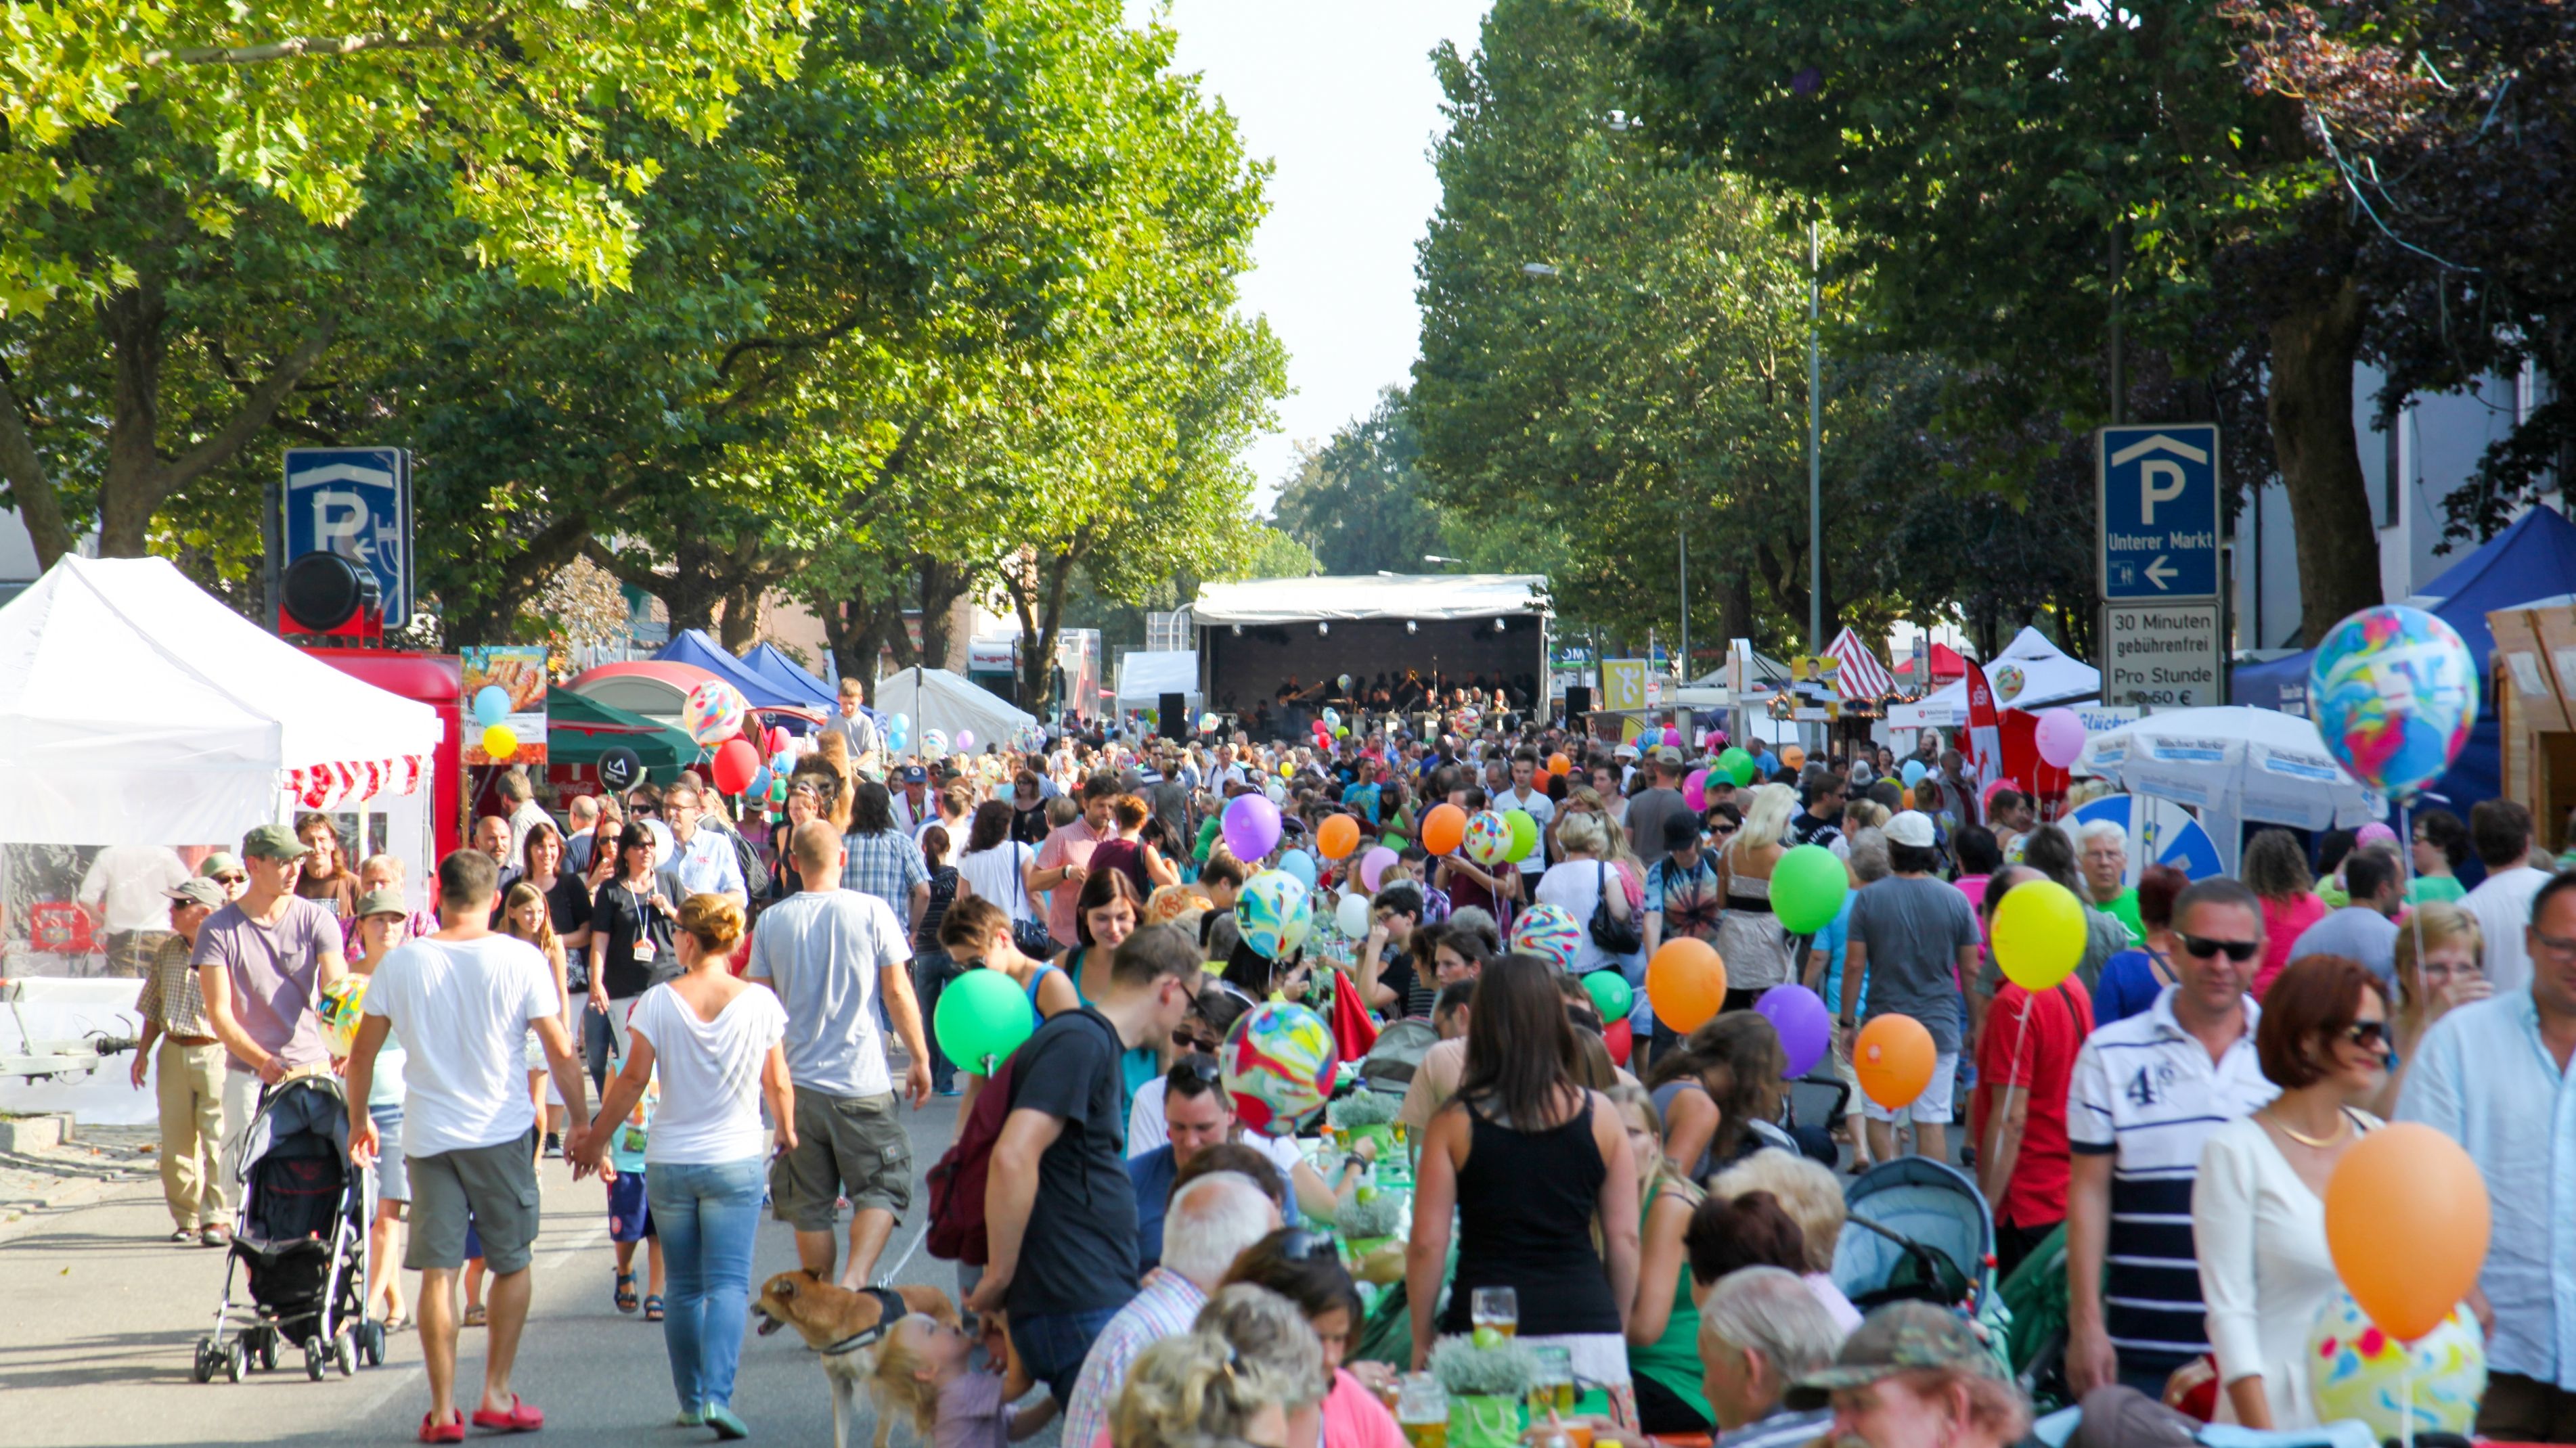 Viele Menschen laufen oder sitzen gemeinsam auf einer langen Straße mit Festivalständen zu beiden Seiten